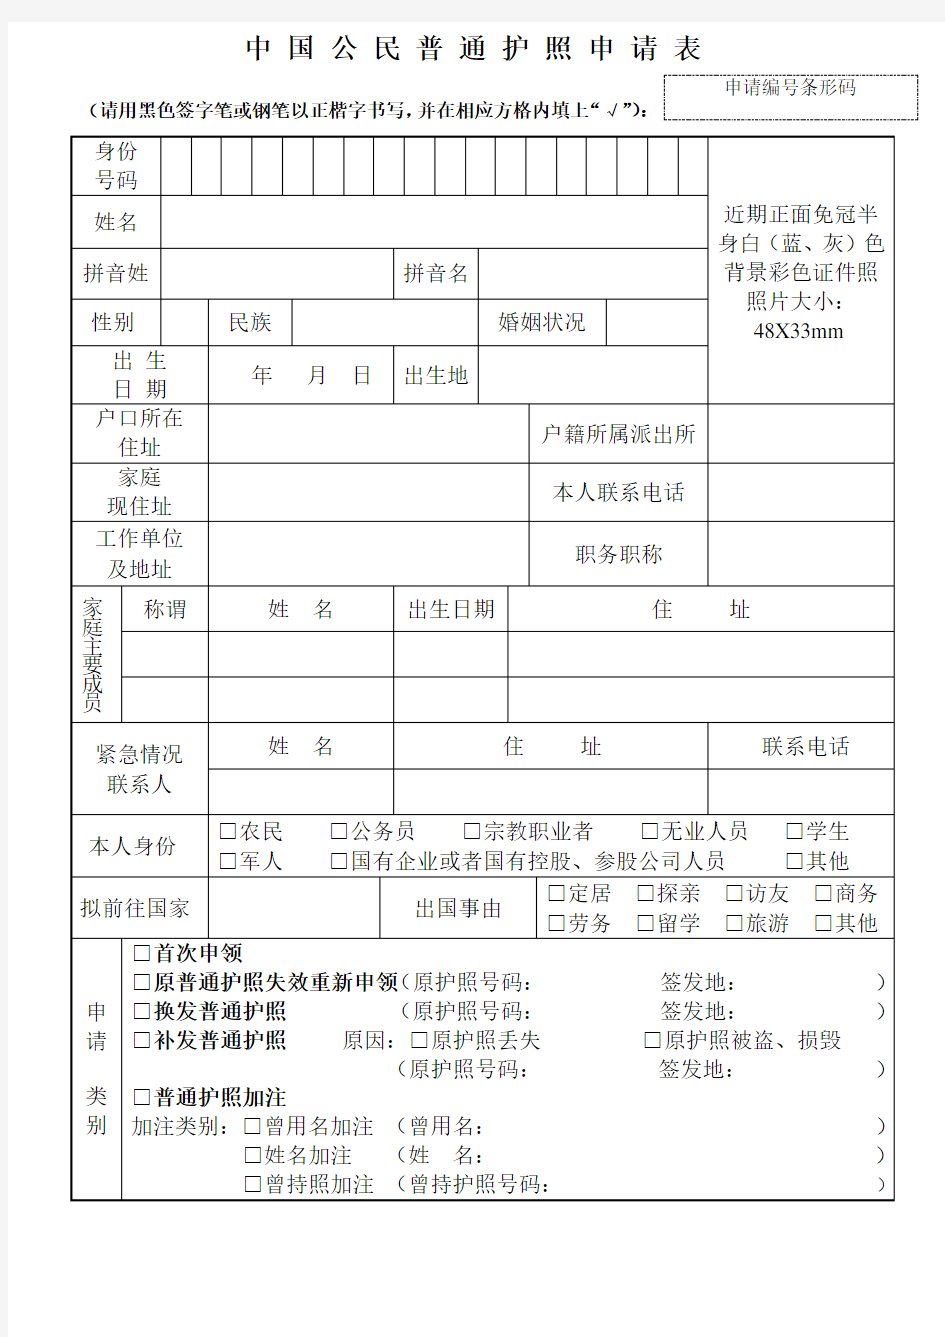 公安出入境管理机关出具中国公民普通护照申请表(正反面)模板